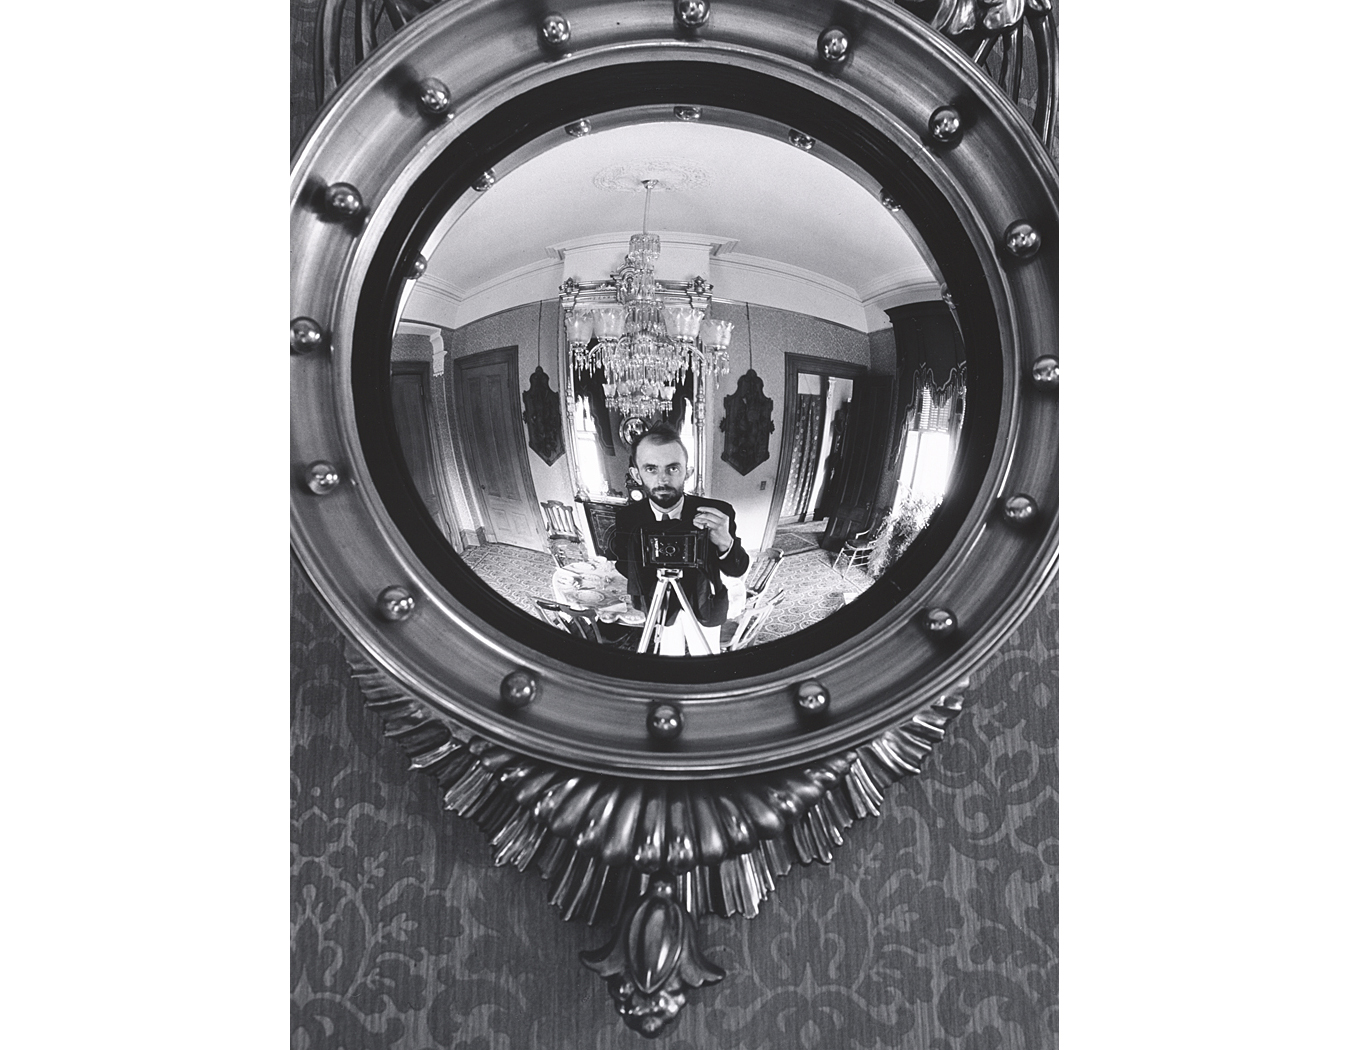 Self-Portrait in Victorian Mirror, Atherton, California